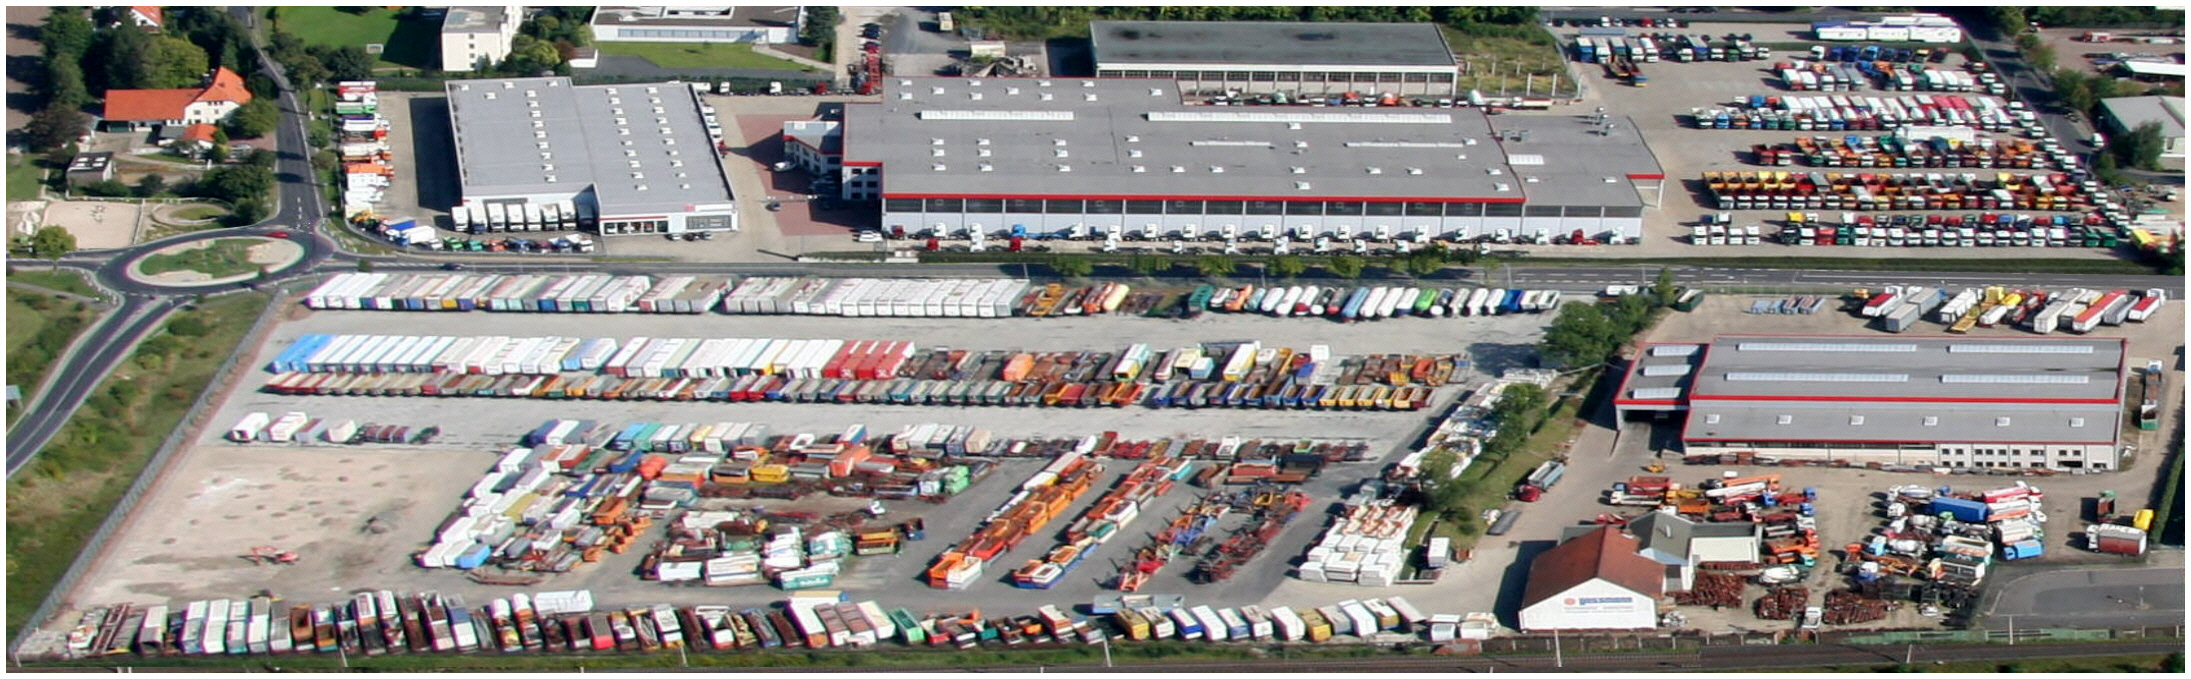 Gassmann GmbH - Wissellaadbakken/ Containers undefined: afbeelding 1